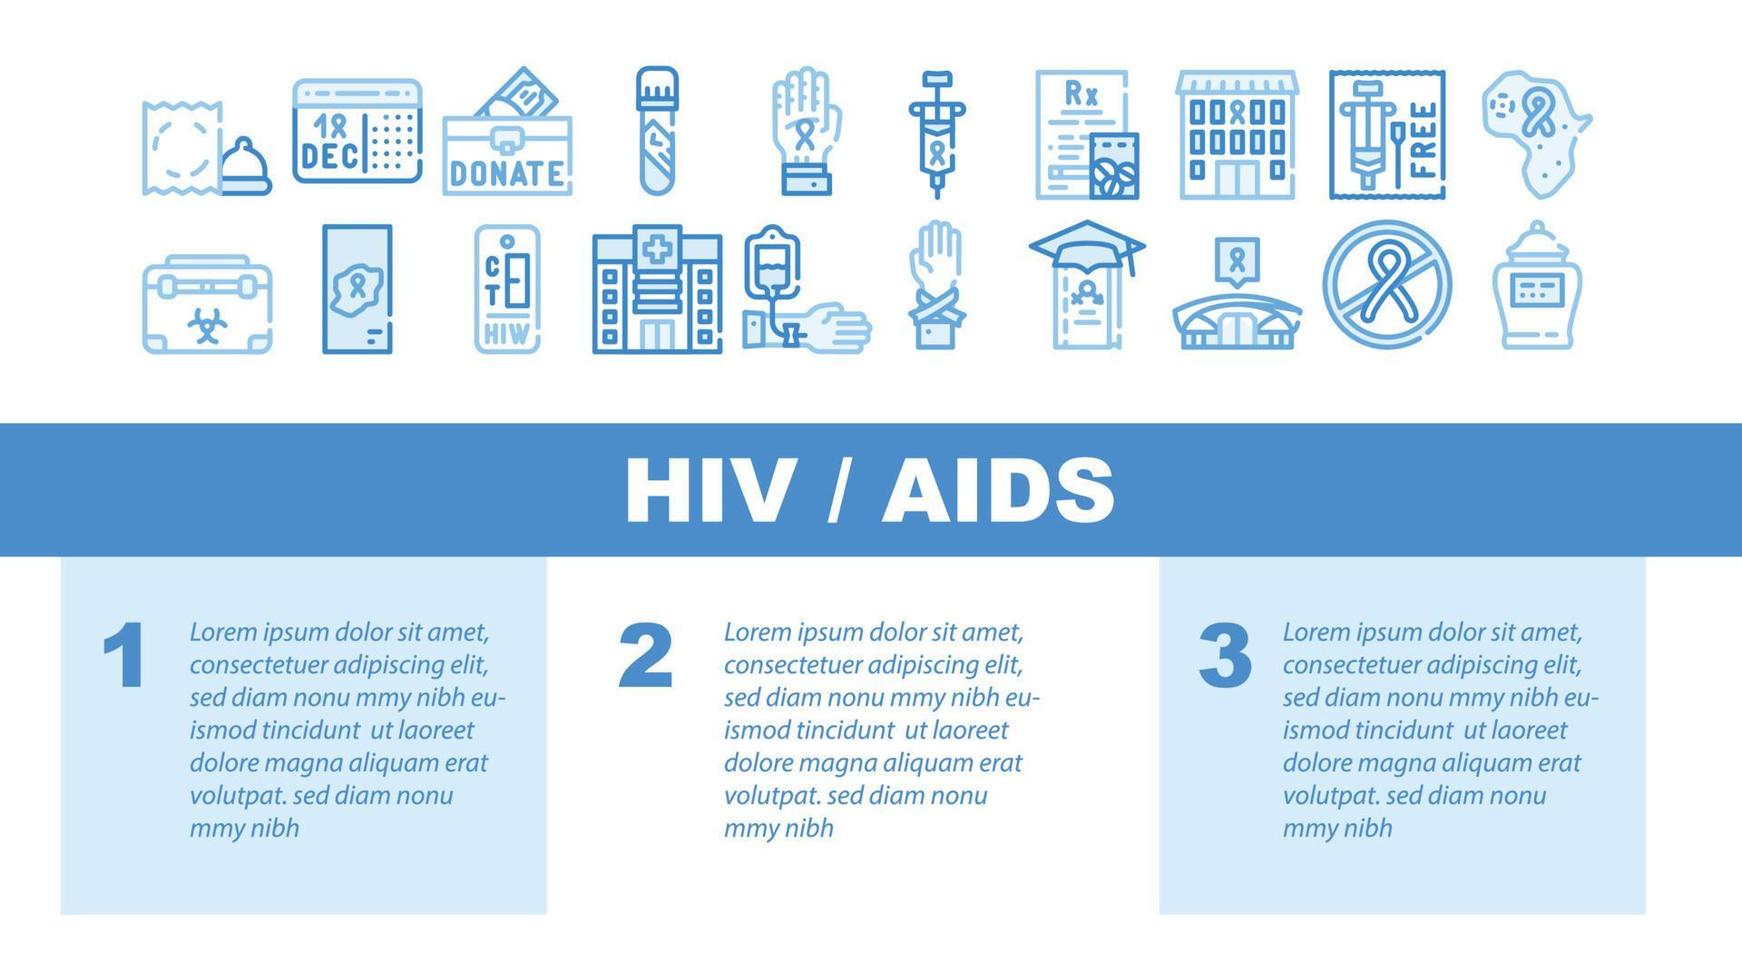 vettore di intestazione di atterraggio della malattia di hiv e aids